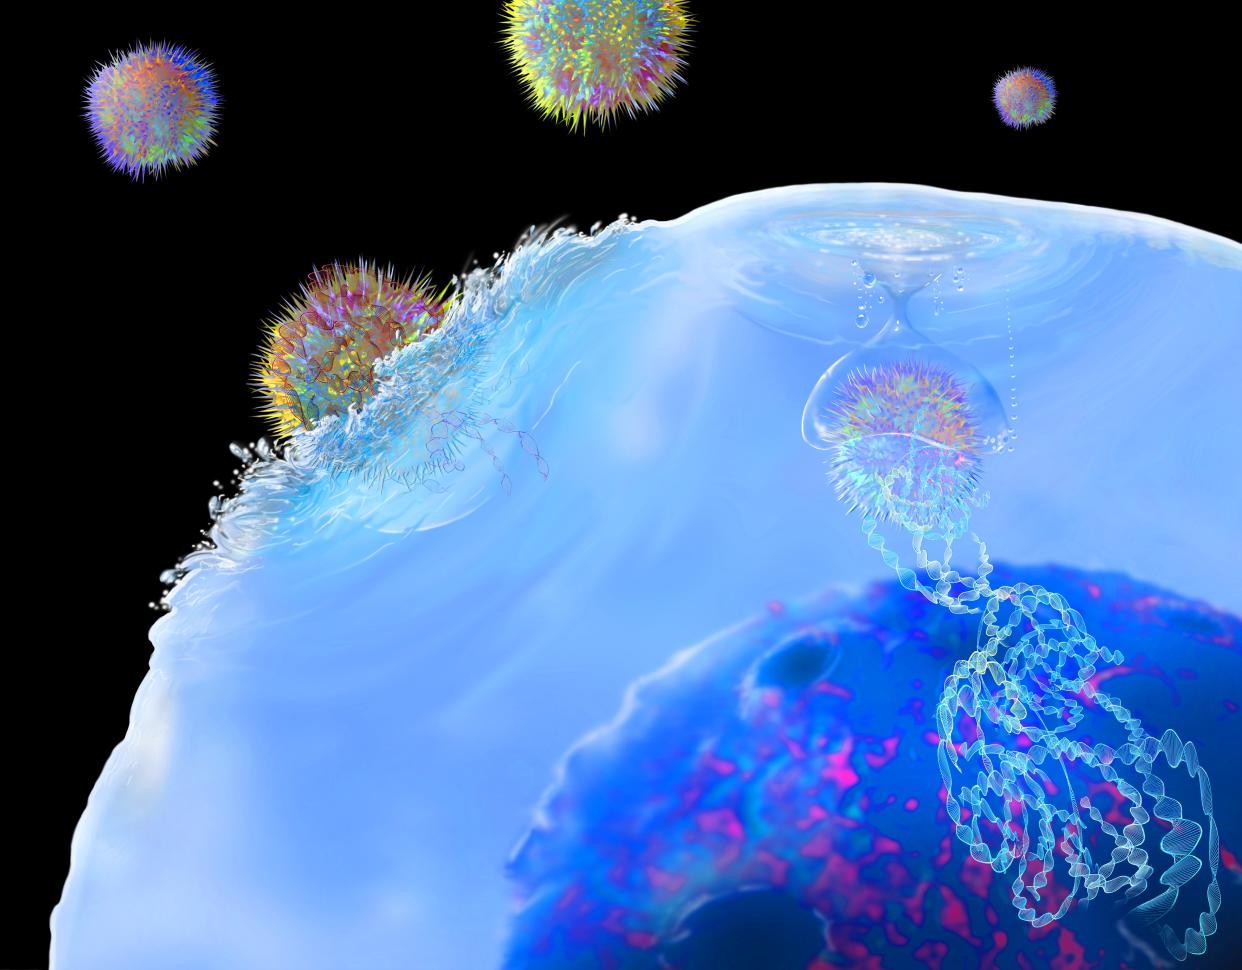 Ilustración de inmunoterapia con células T CAR para tratar el cáncer. Los linfocitos T (azul), se extraen del paciente y tienen su ADN (ácido desoxirribonucleico) modificado por virus (esferas puntiagudas) para que produzcan proteínas receptoras de antígenos. Estas proteínas serán específicas para el cáncer del paciente. Luego, las células T modificadas se multiplican en el laboratorio antes de volver a introducirlas al paciente. | Getty